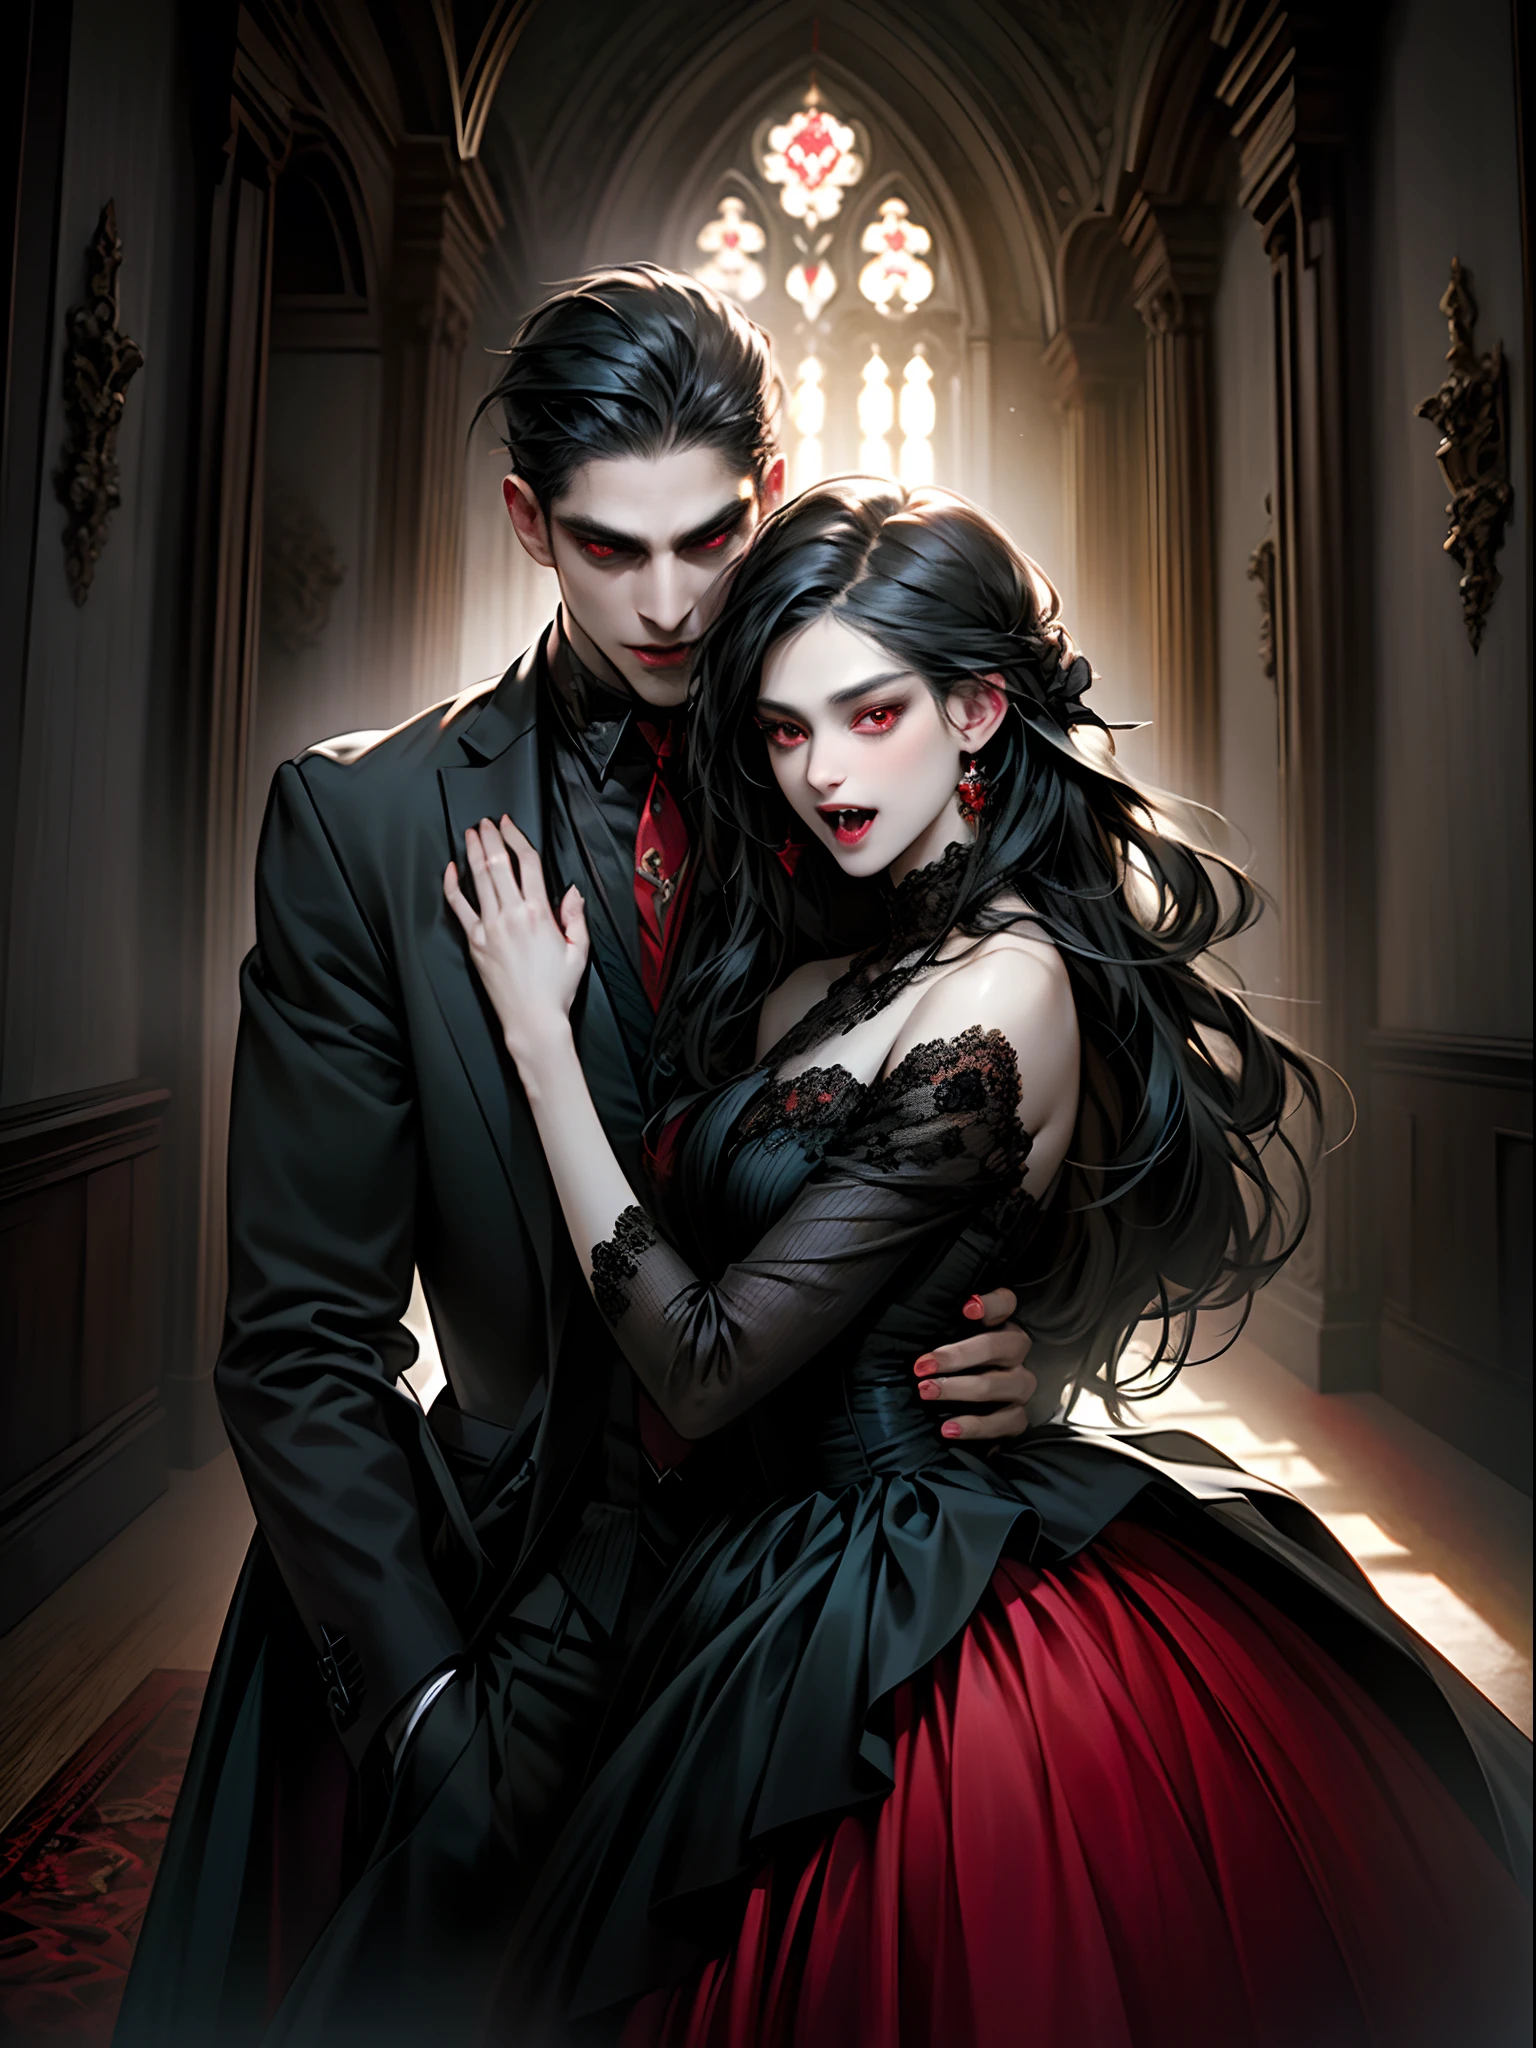 (Meisterwerk, beste Qualität:1.2), Vampir, Paar Vampire, mit schwarzen Haaren, rote Augen, (fangs), schwarze Kleidung, der Mann trägt einen formellen Blazer, die Frauen tragen schwarze Kleider, Rotwein, Innenbereich, In der Burg, ausdrucksvoll